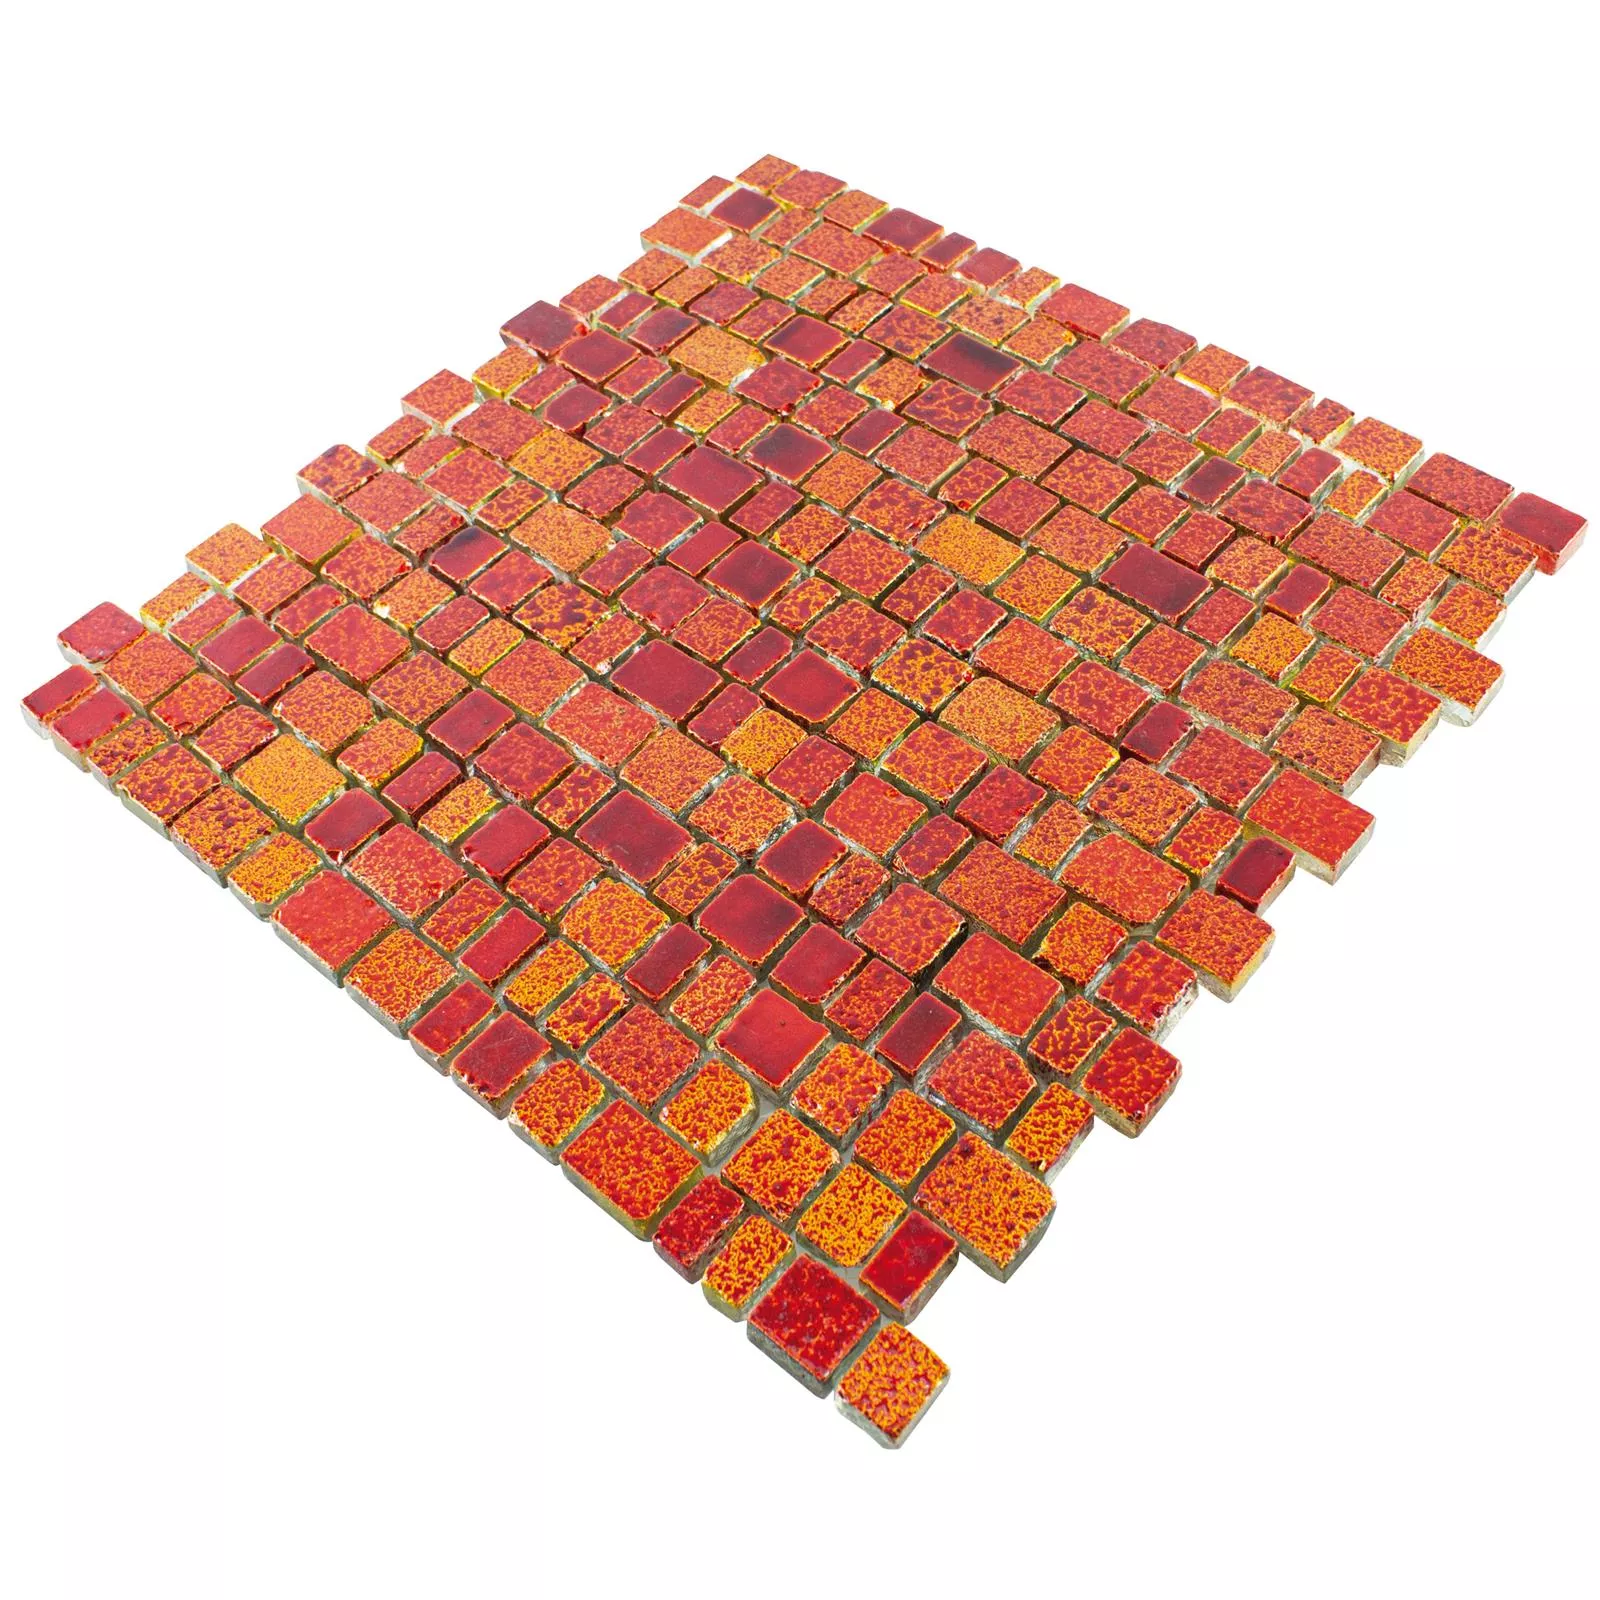 Sticlă Plăci De Mozaic Economy Roșu Galben